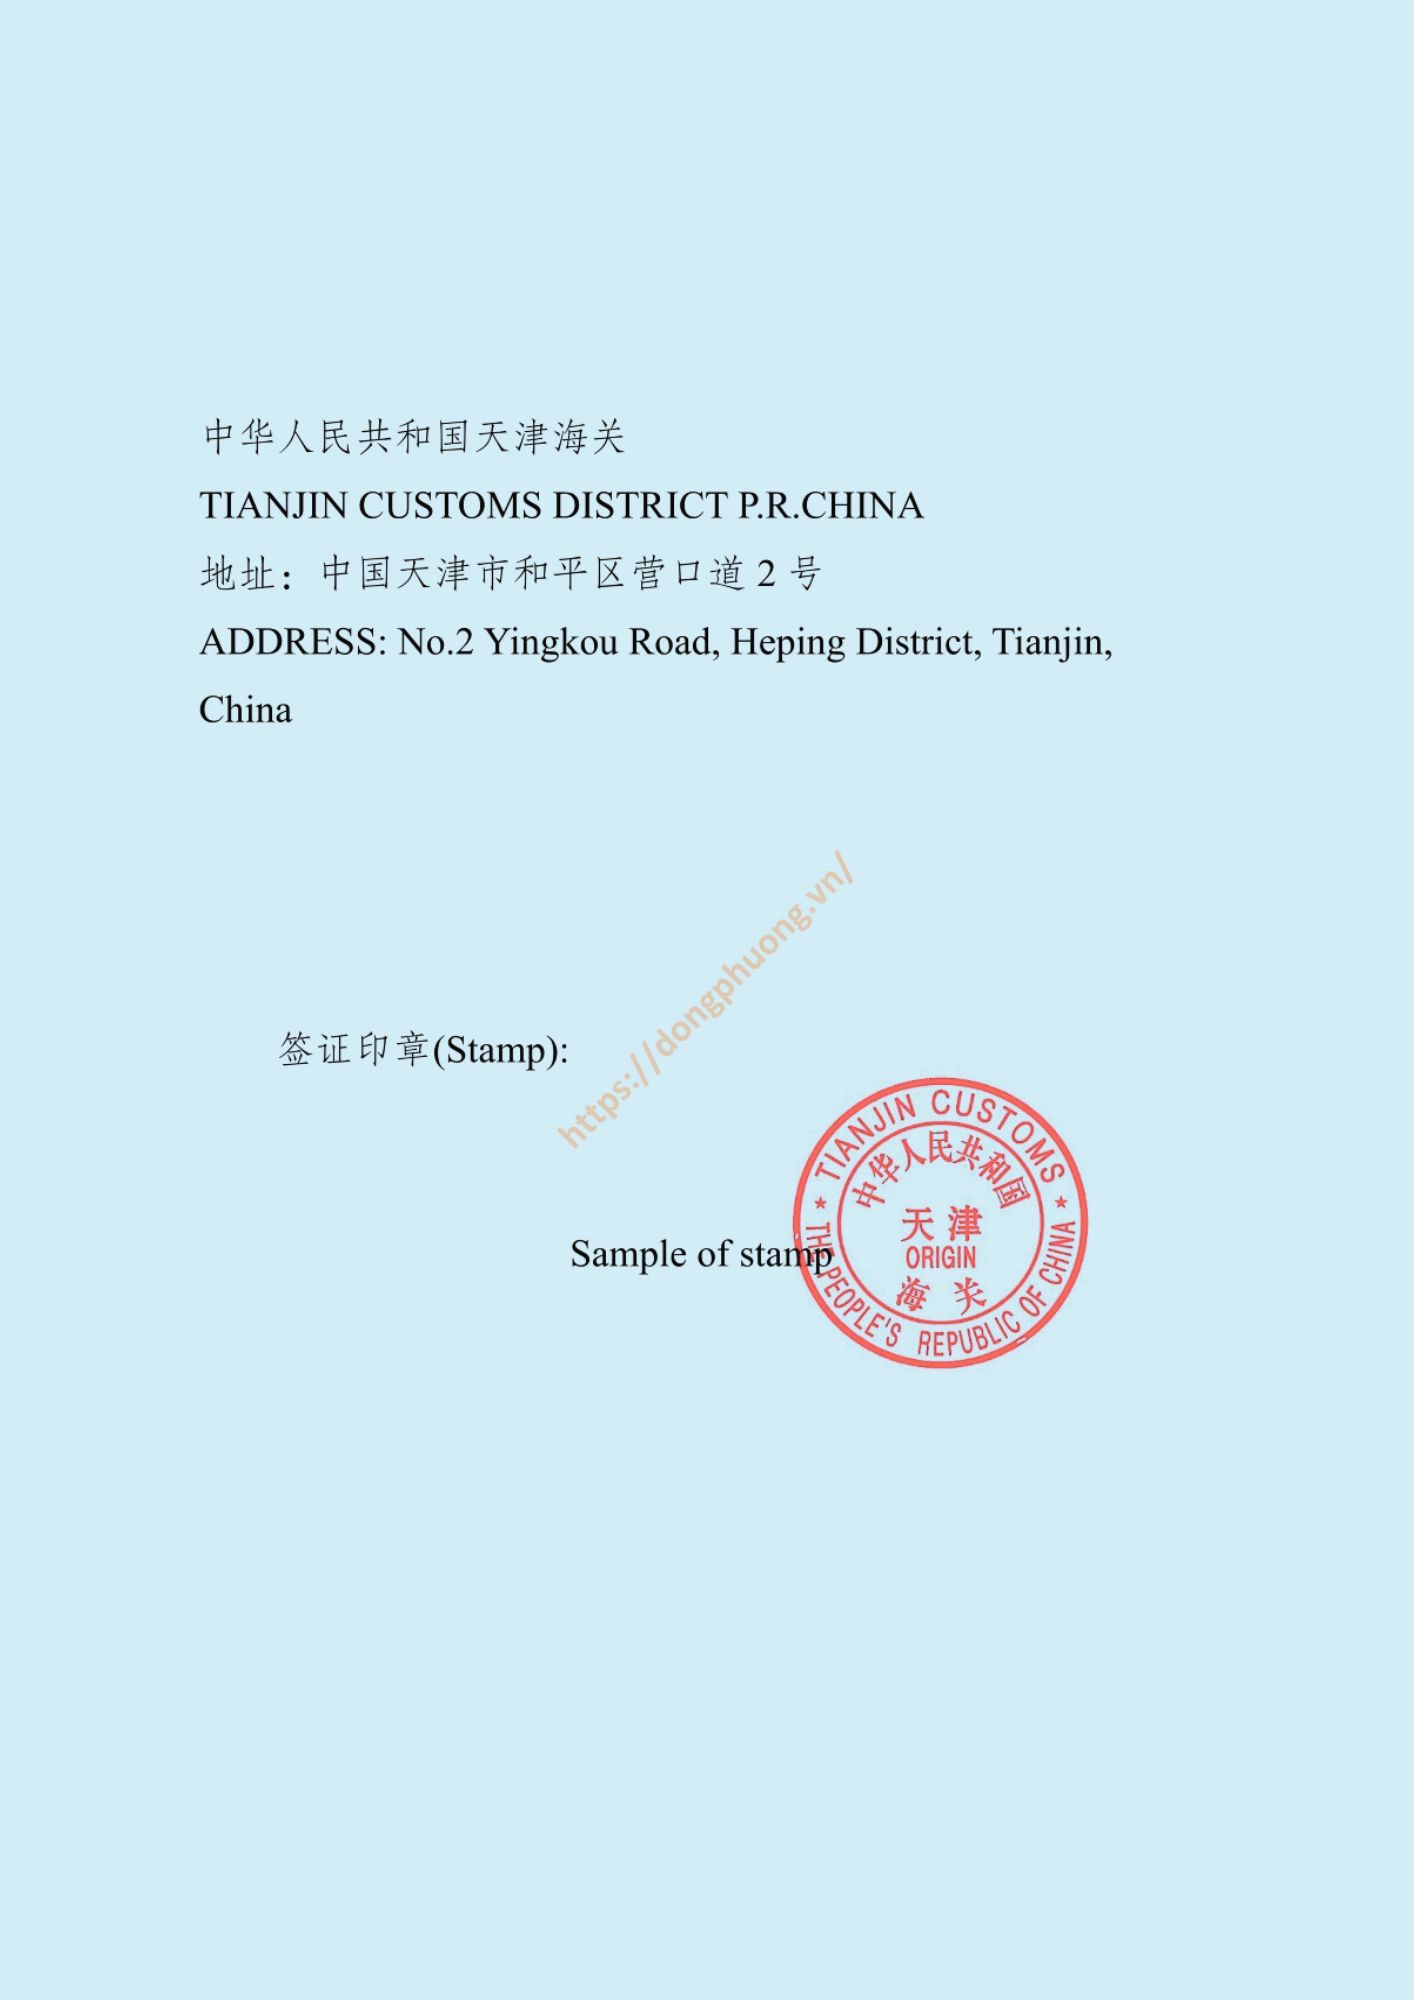 mẫu dấu và chữ ký form E 2024 Tianjin customs